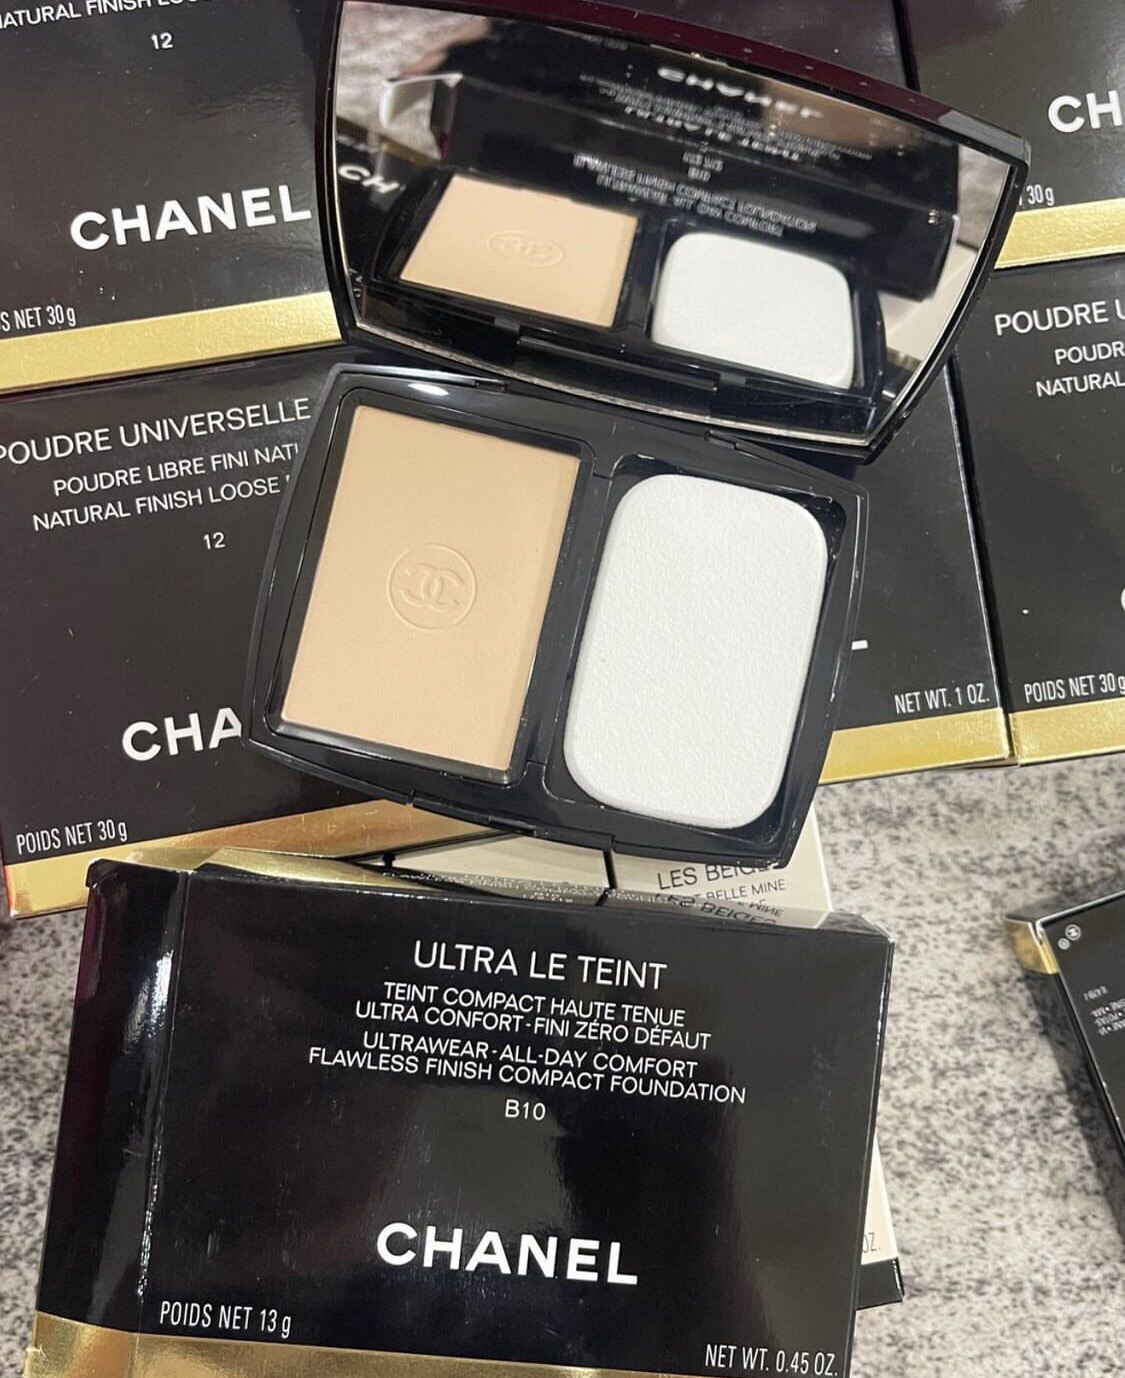 Review Phấn bột Chanel Poudre Universelle Libre màu nào đẹp